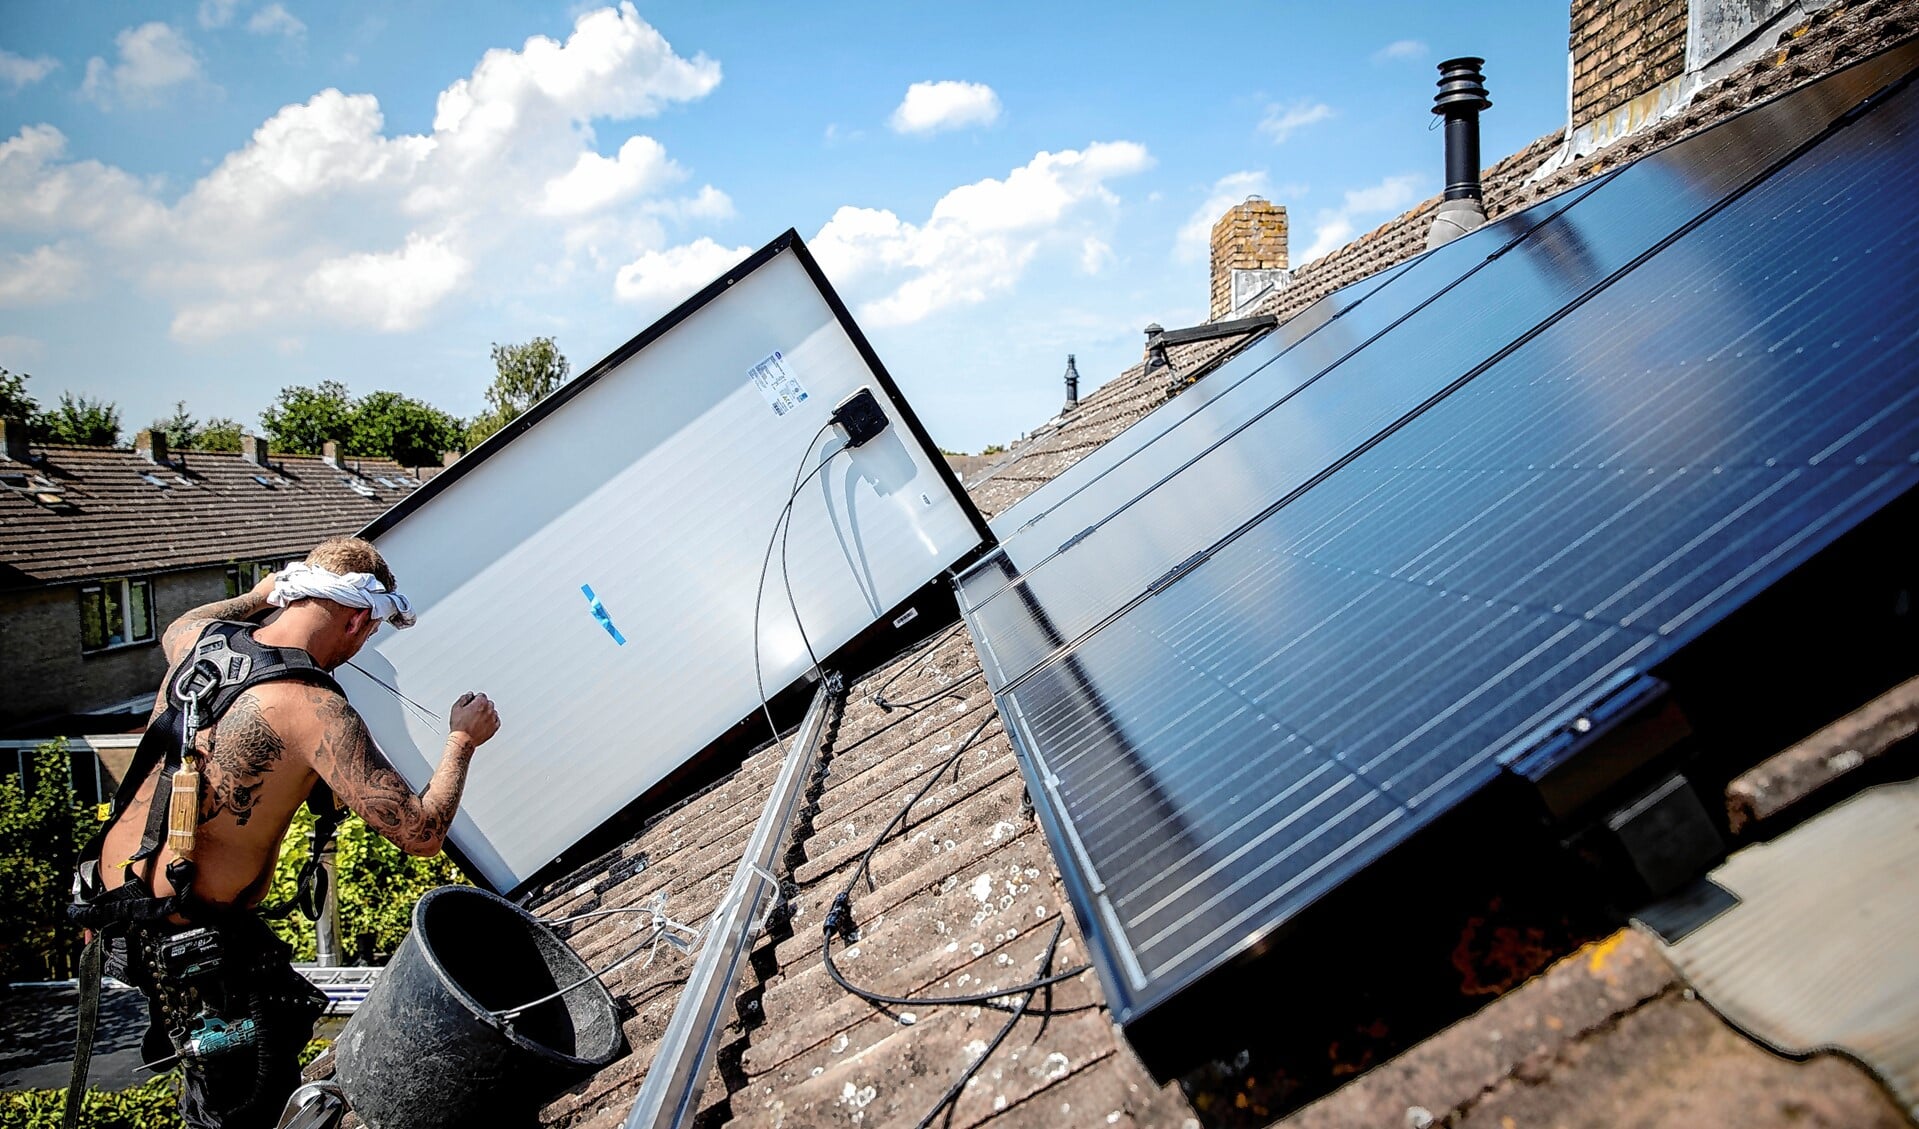 Met een duurzaamheidslening kunnen inwoners maatregelen treffen, zoals zonnepanelen aanleggen op het dak.